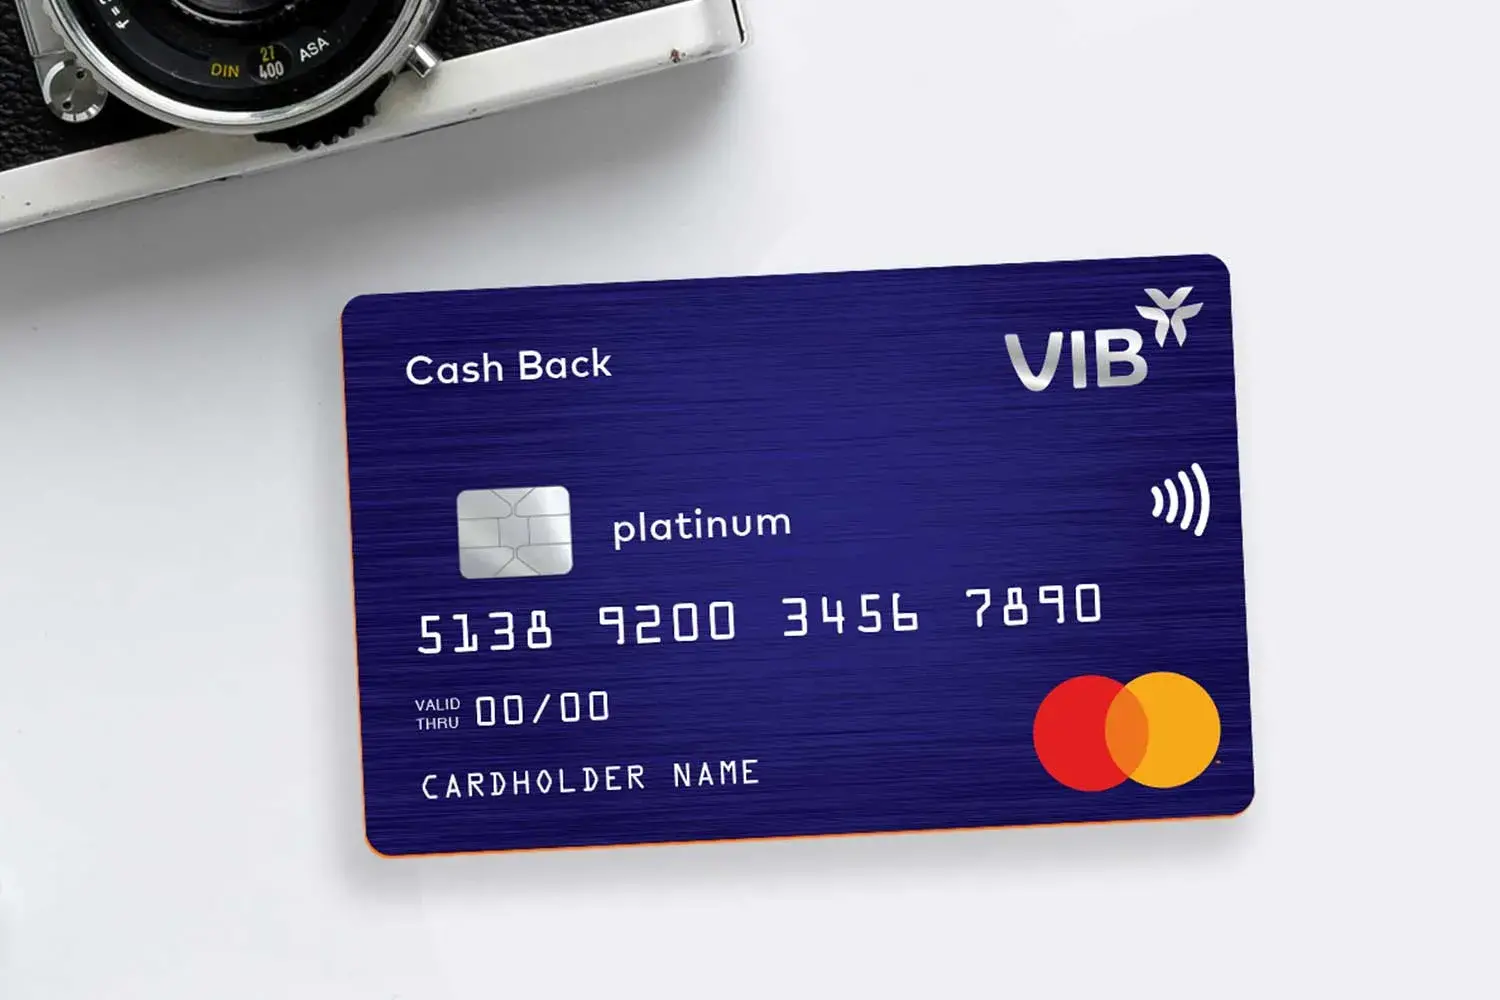 Chính sách bảo mật an toàn với thẻ tín dụng VIB